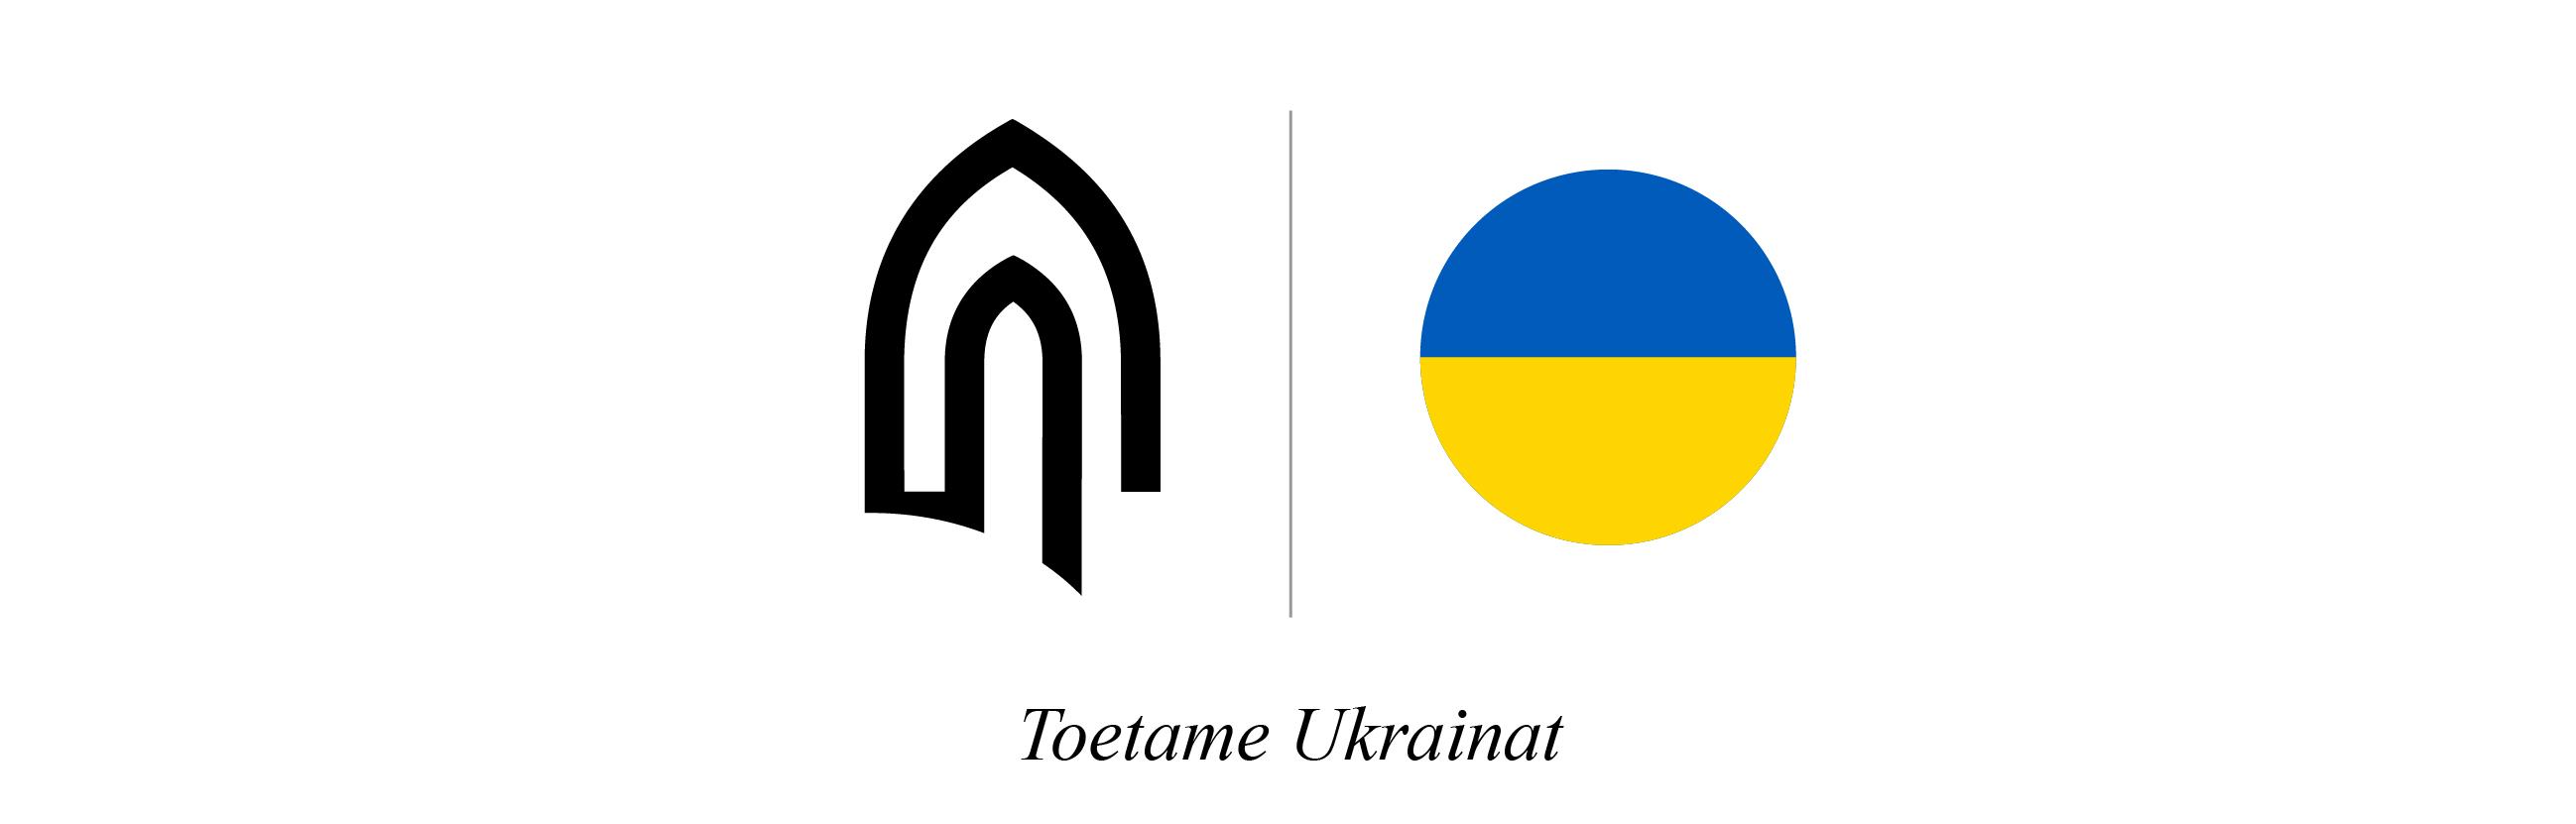 "Toetame Ukrainat" Tallinna Ülikooli visuaal